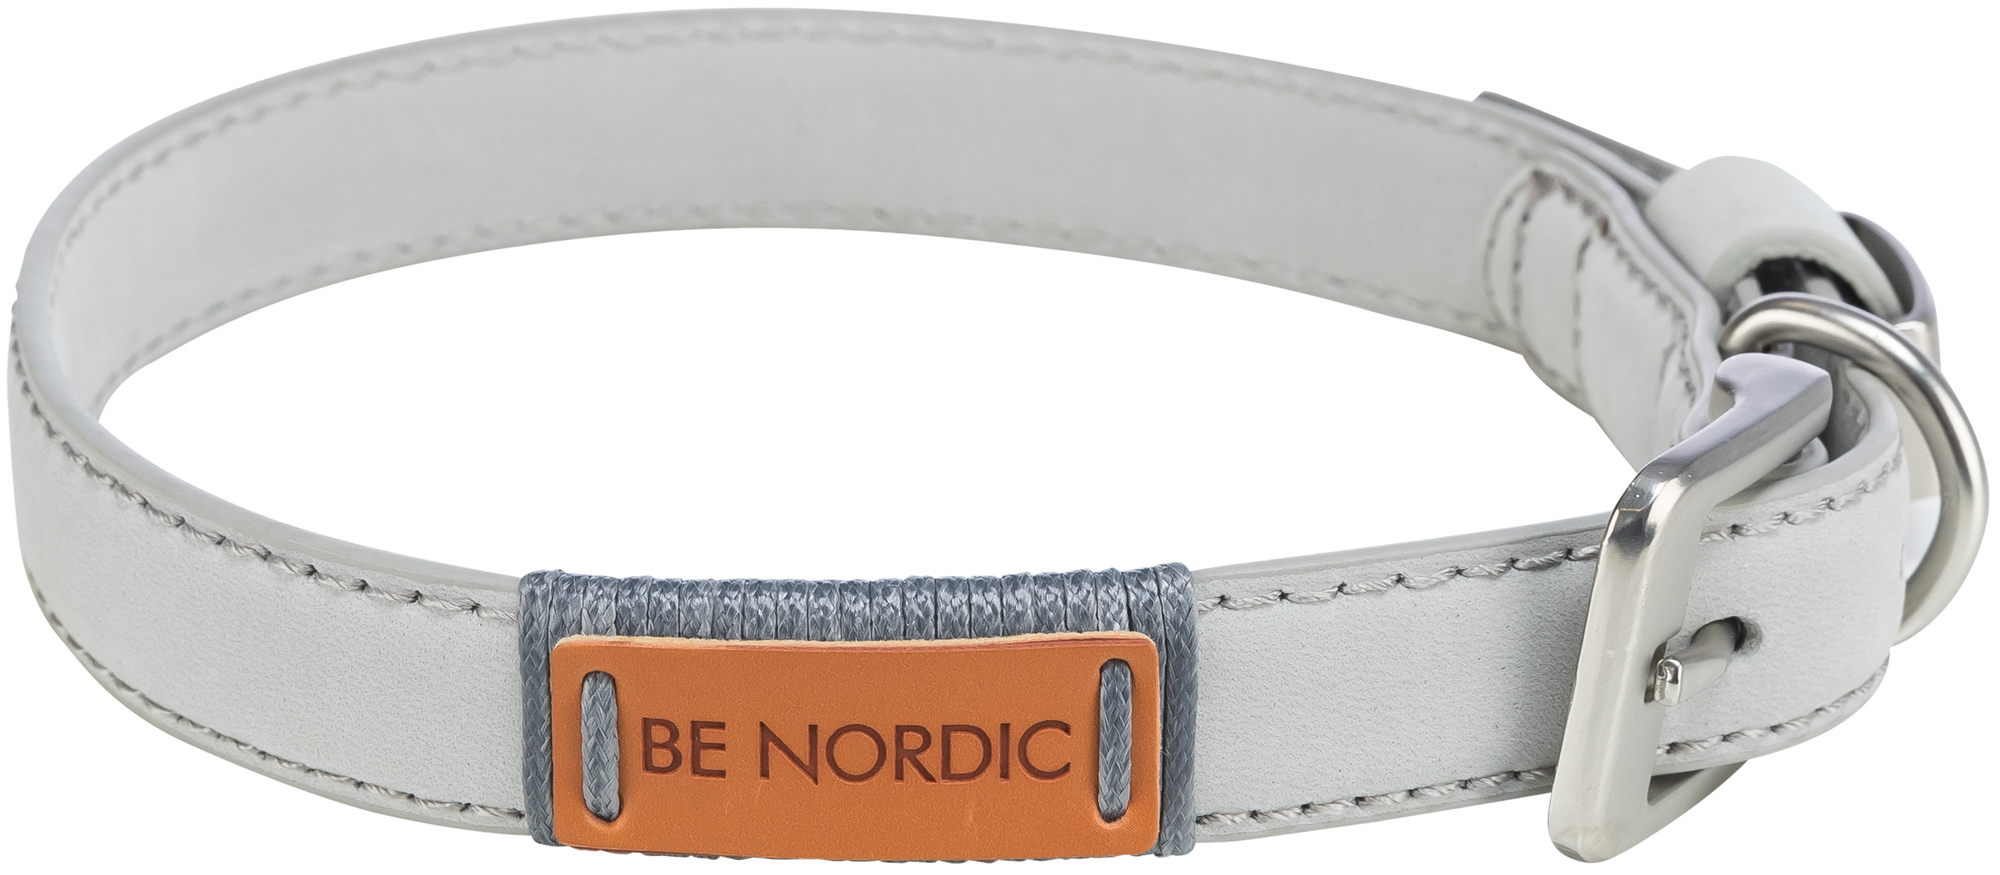 Trixie Be Nordic Halsband aus hellgrauem Leder - mehrere Größen erhältlich